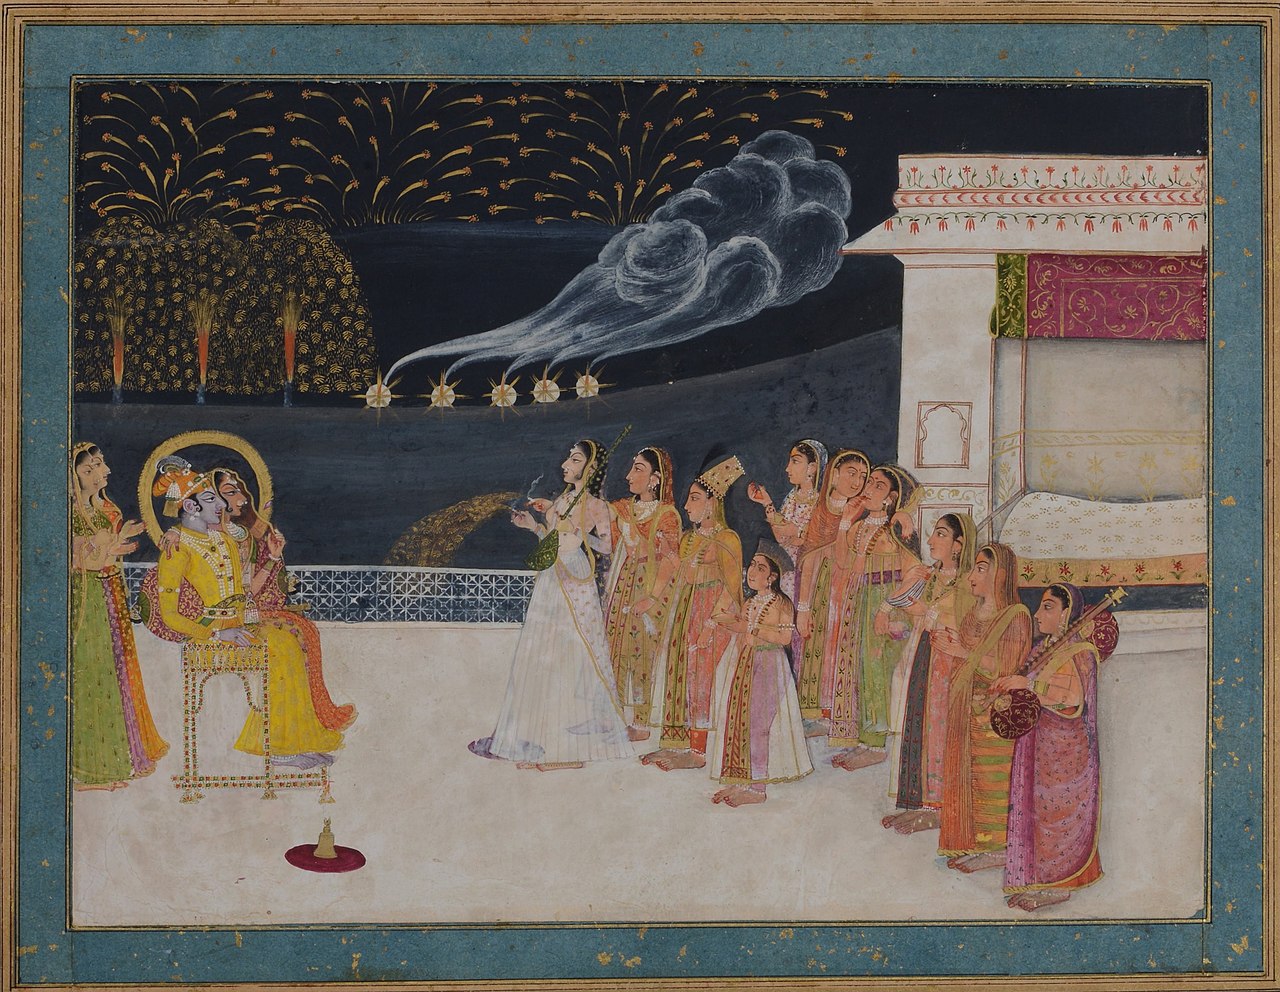 Radha and Krishna watching fireworks in the night sky by Sitaram. Kishangarh, late 18th-century. 